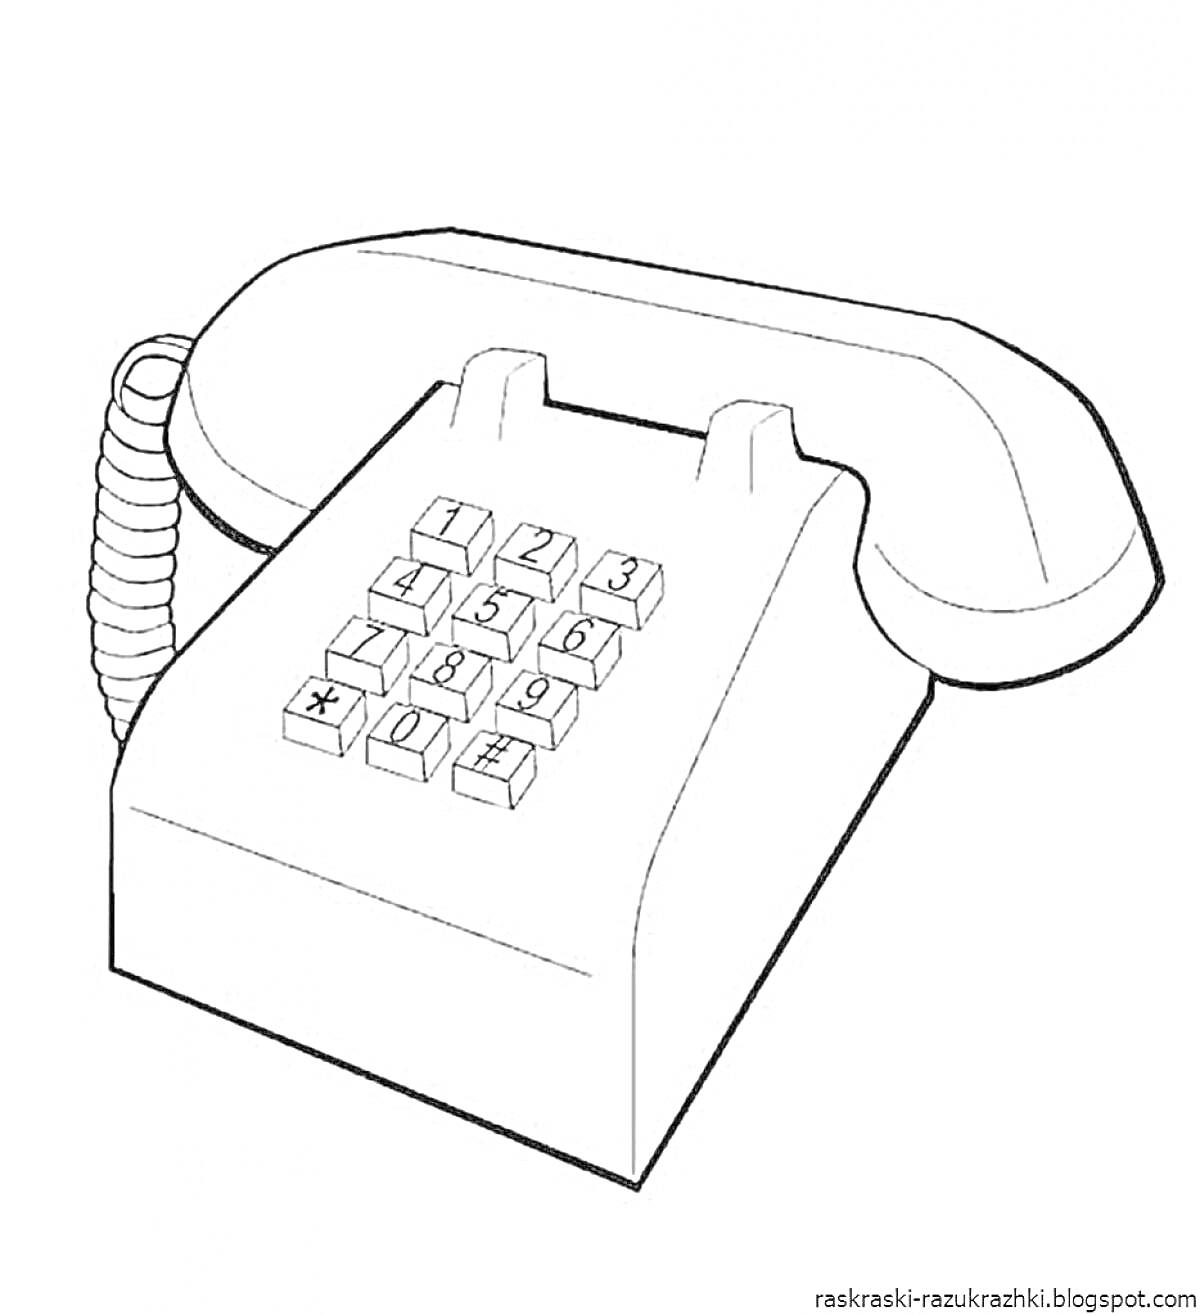 Раскраска Стационарный телефон с трубкой и кнопками на панели